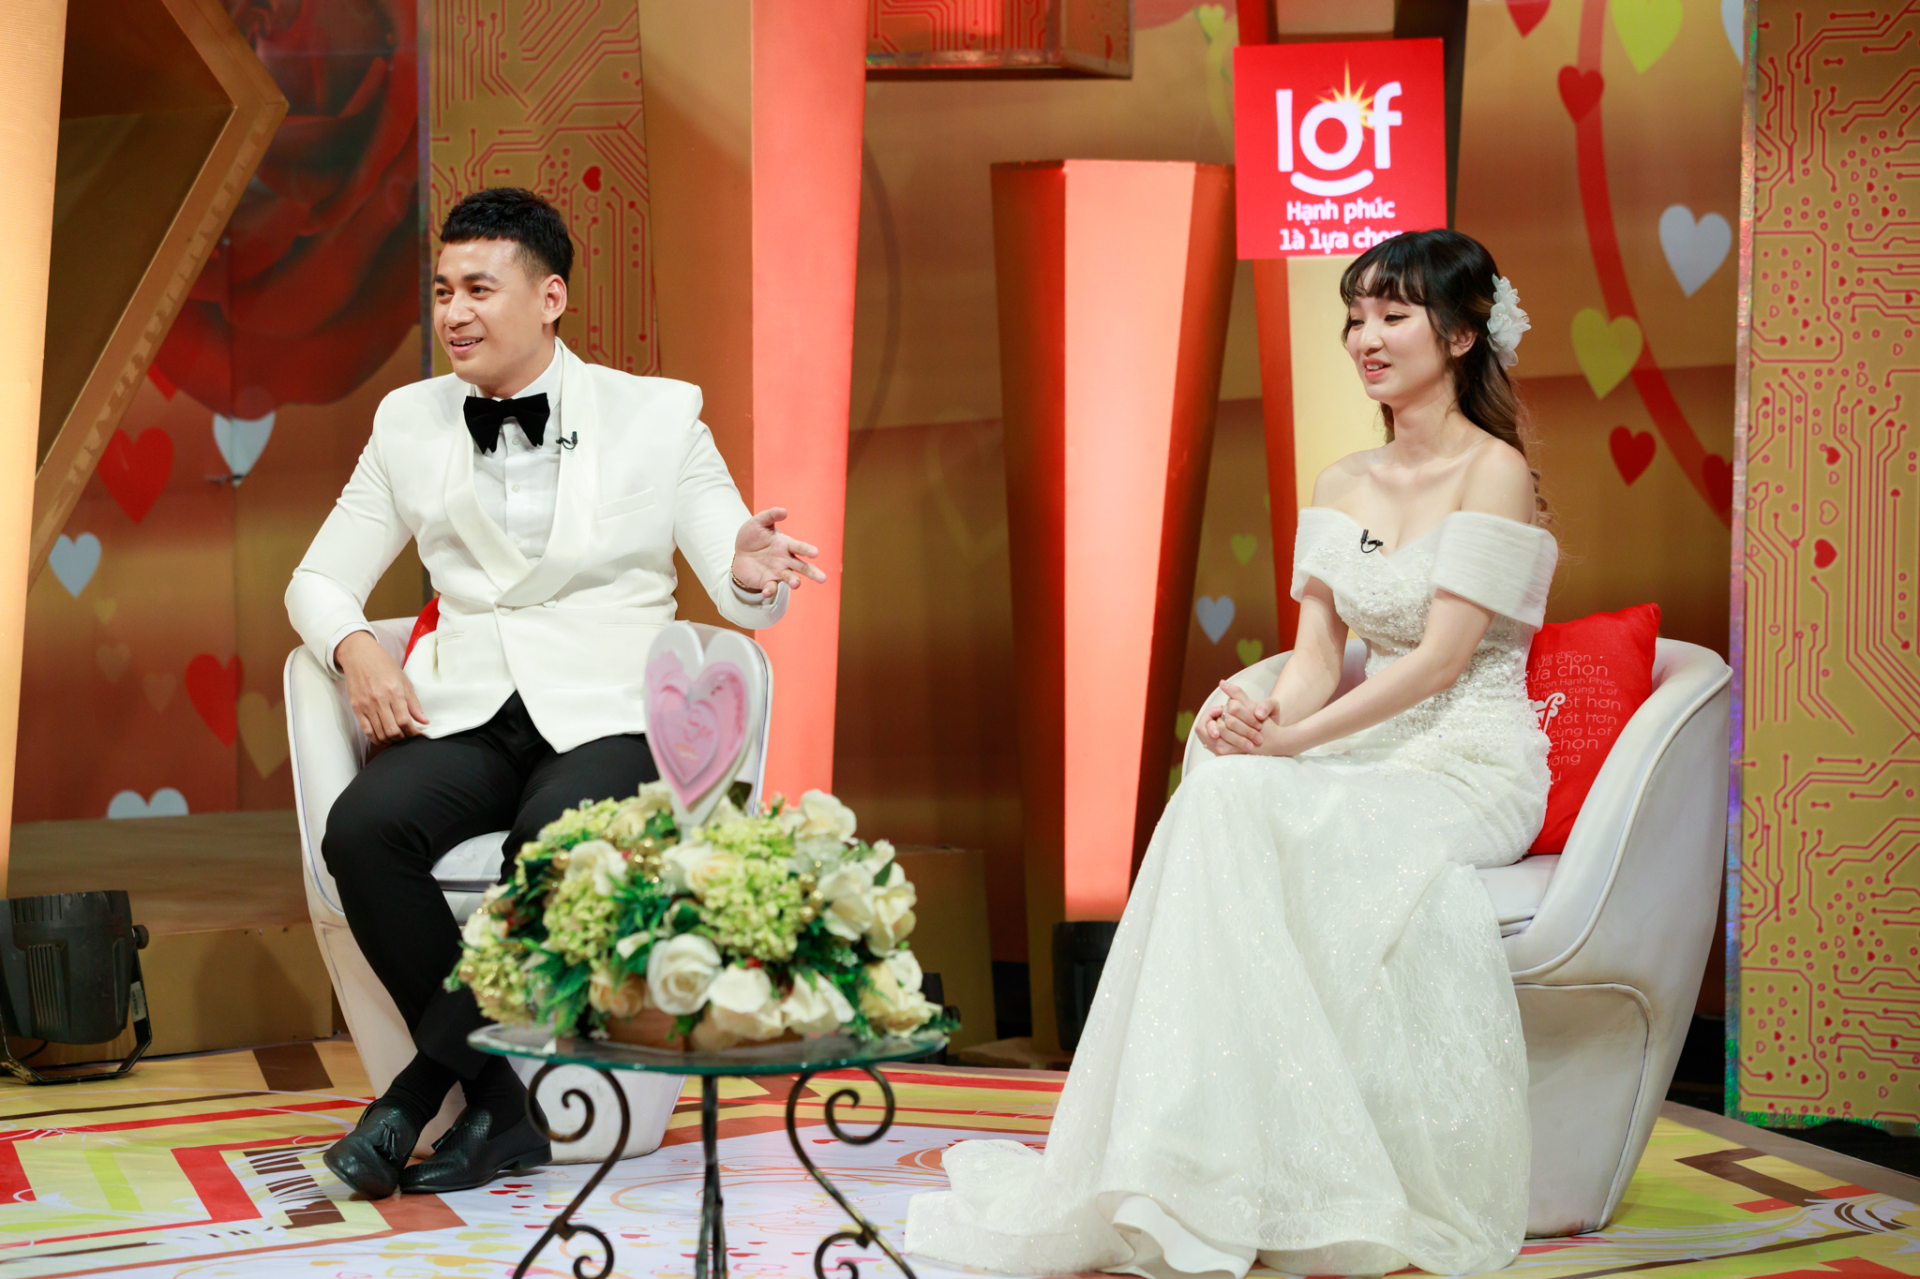 Diễn viên Ngọc Thuận lần đầu tiết lộ cuộc sống hôn nhân với vợ đẹp kém 18 tuổi - ảnh 5